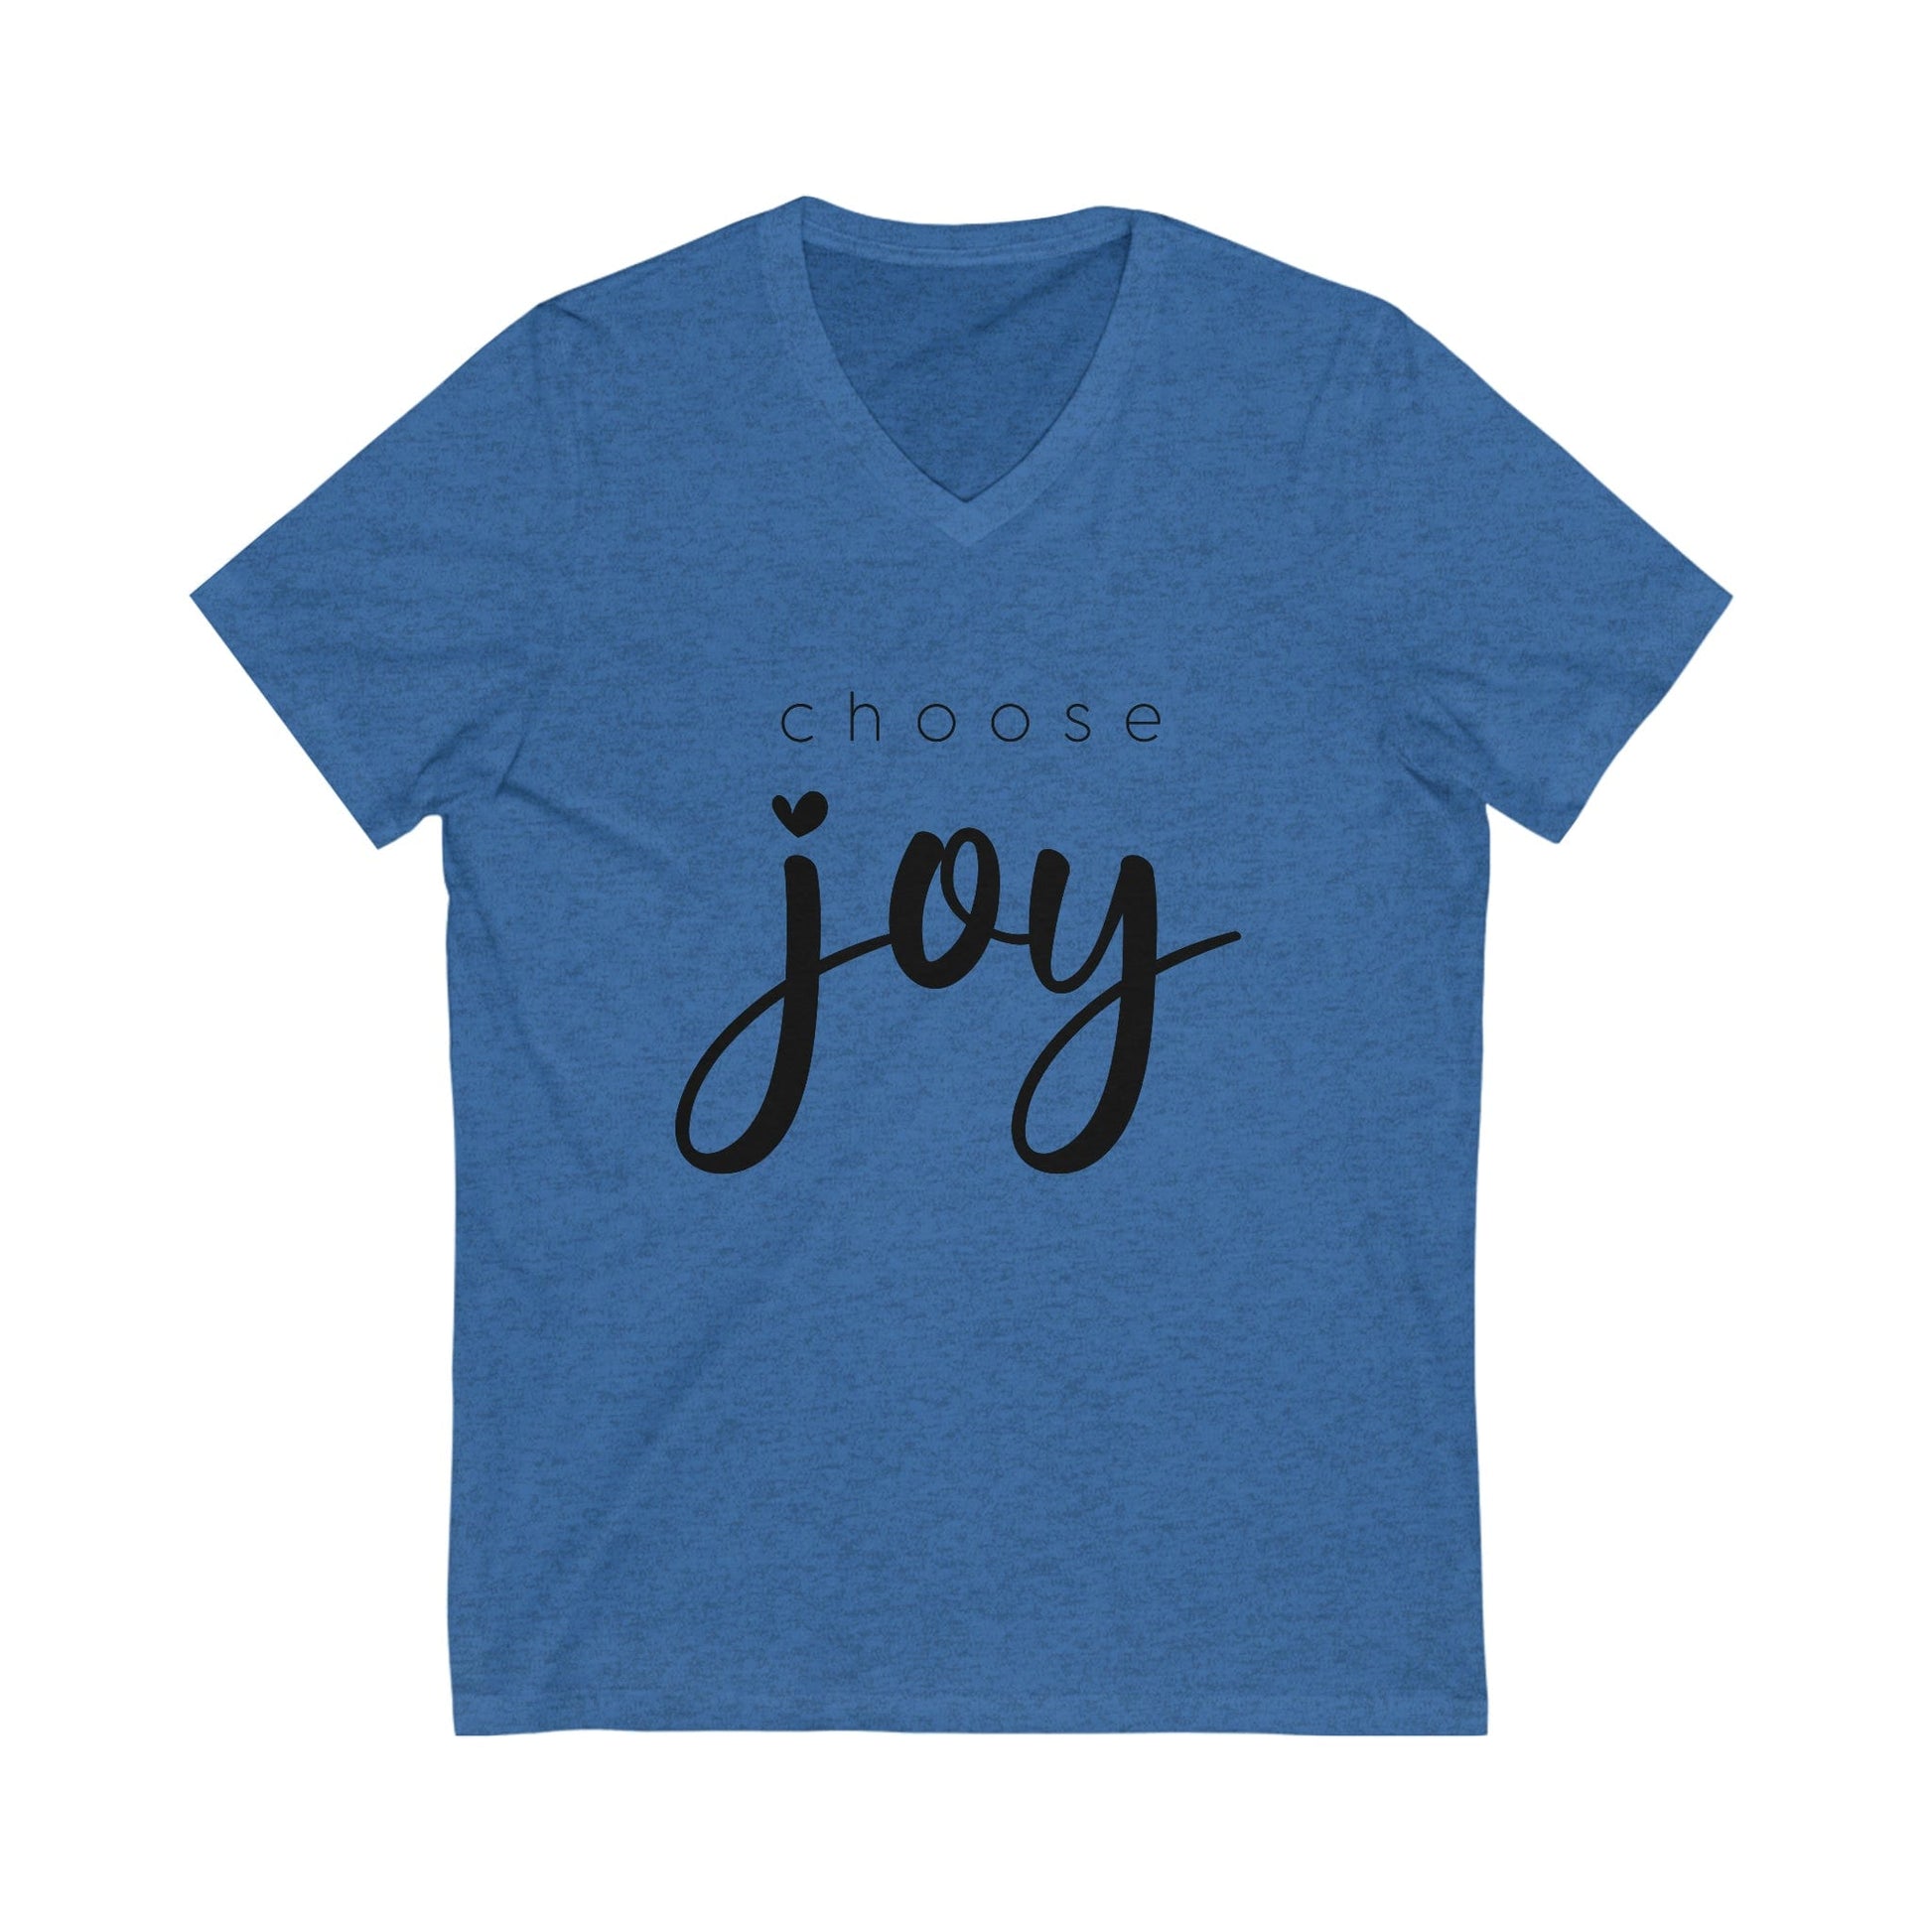 Jesus Joy Tee, The Joy of the Lord Tee, Choosing Joy, Living in my Joy T-Shirt